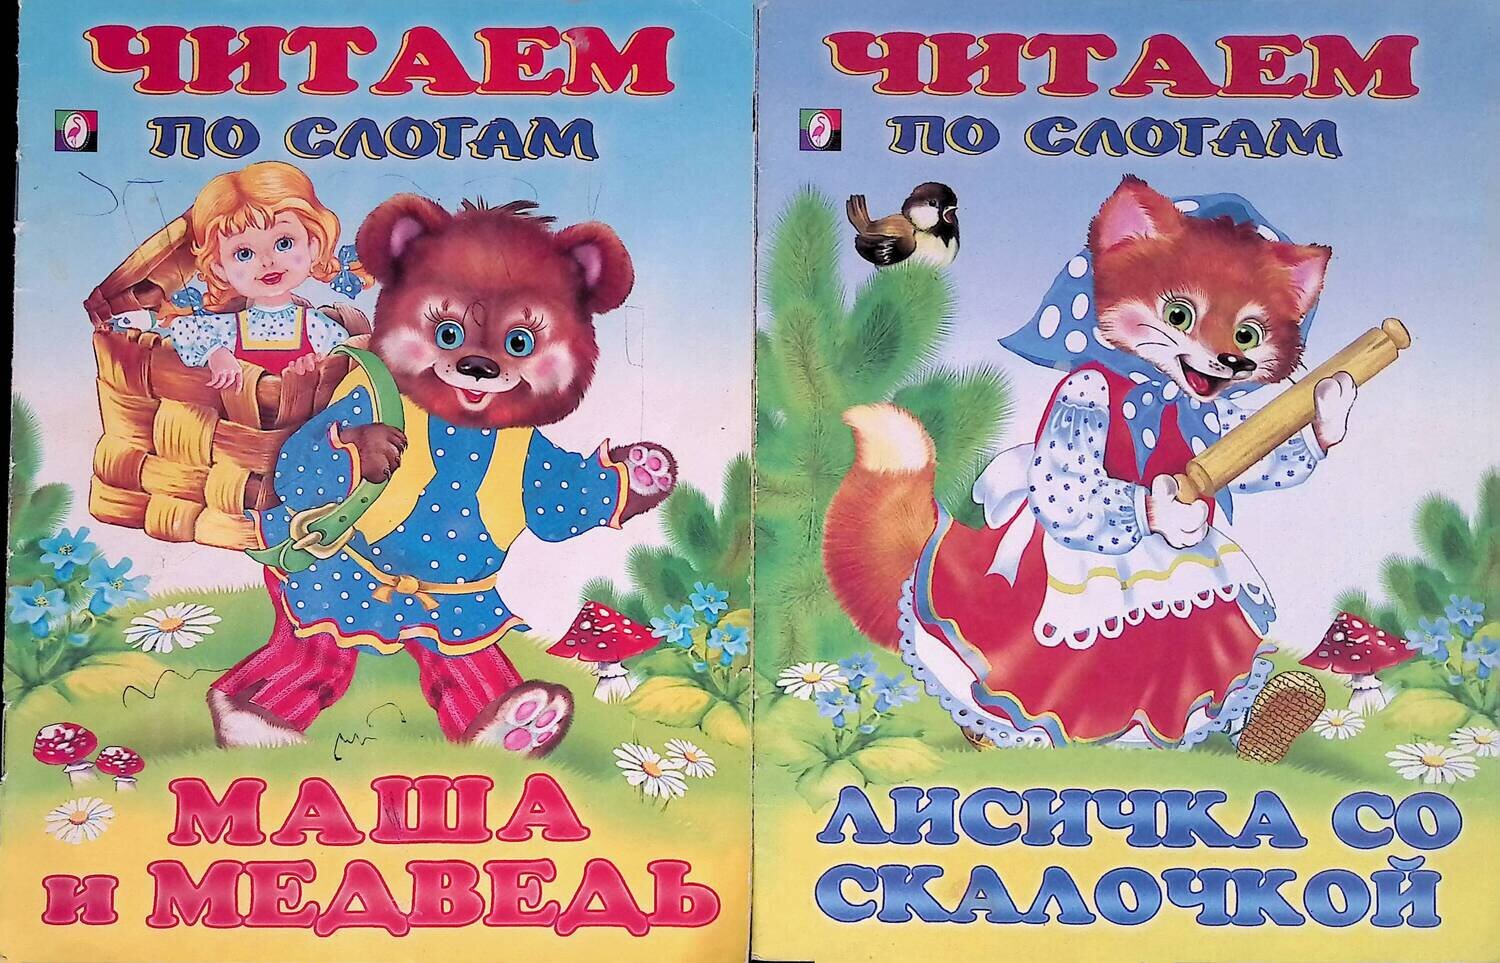 Комплект из 2 книг: Маша и медведь. Лисичка со скалочкой; нет автора